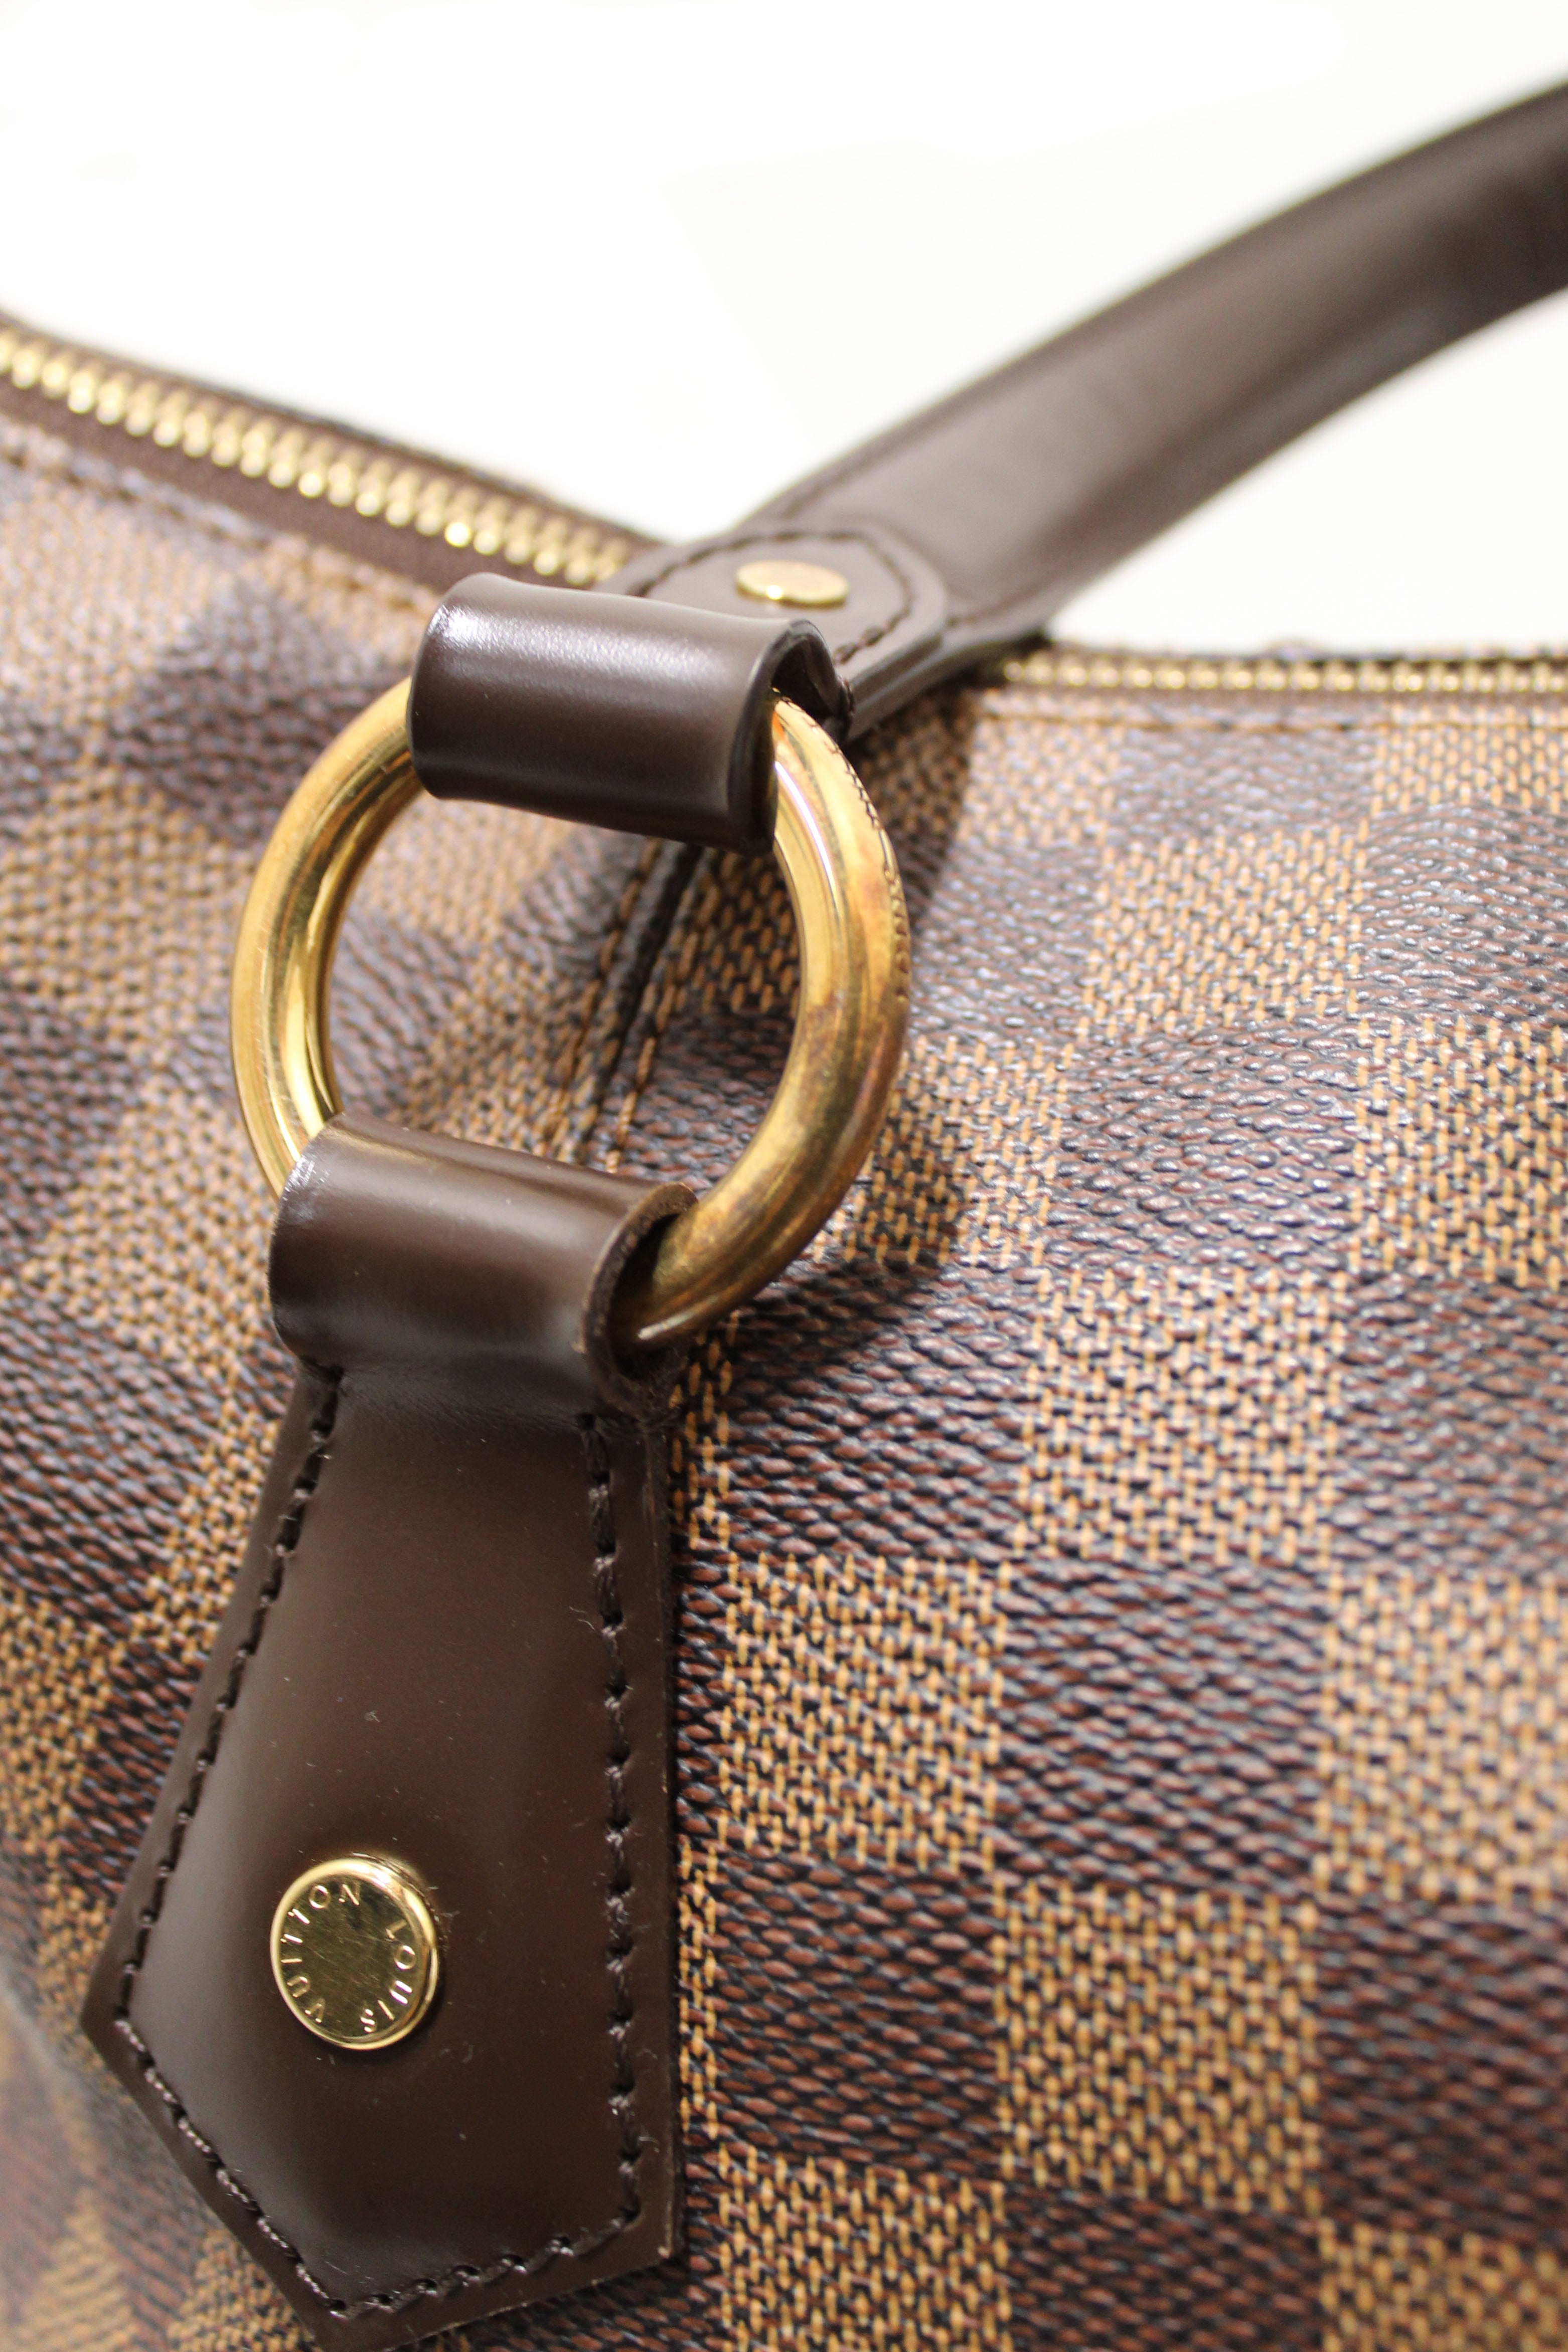 Louis Vuitton, Bags, Louis Vuitton Checker Bag